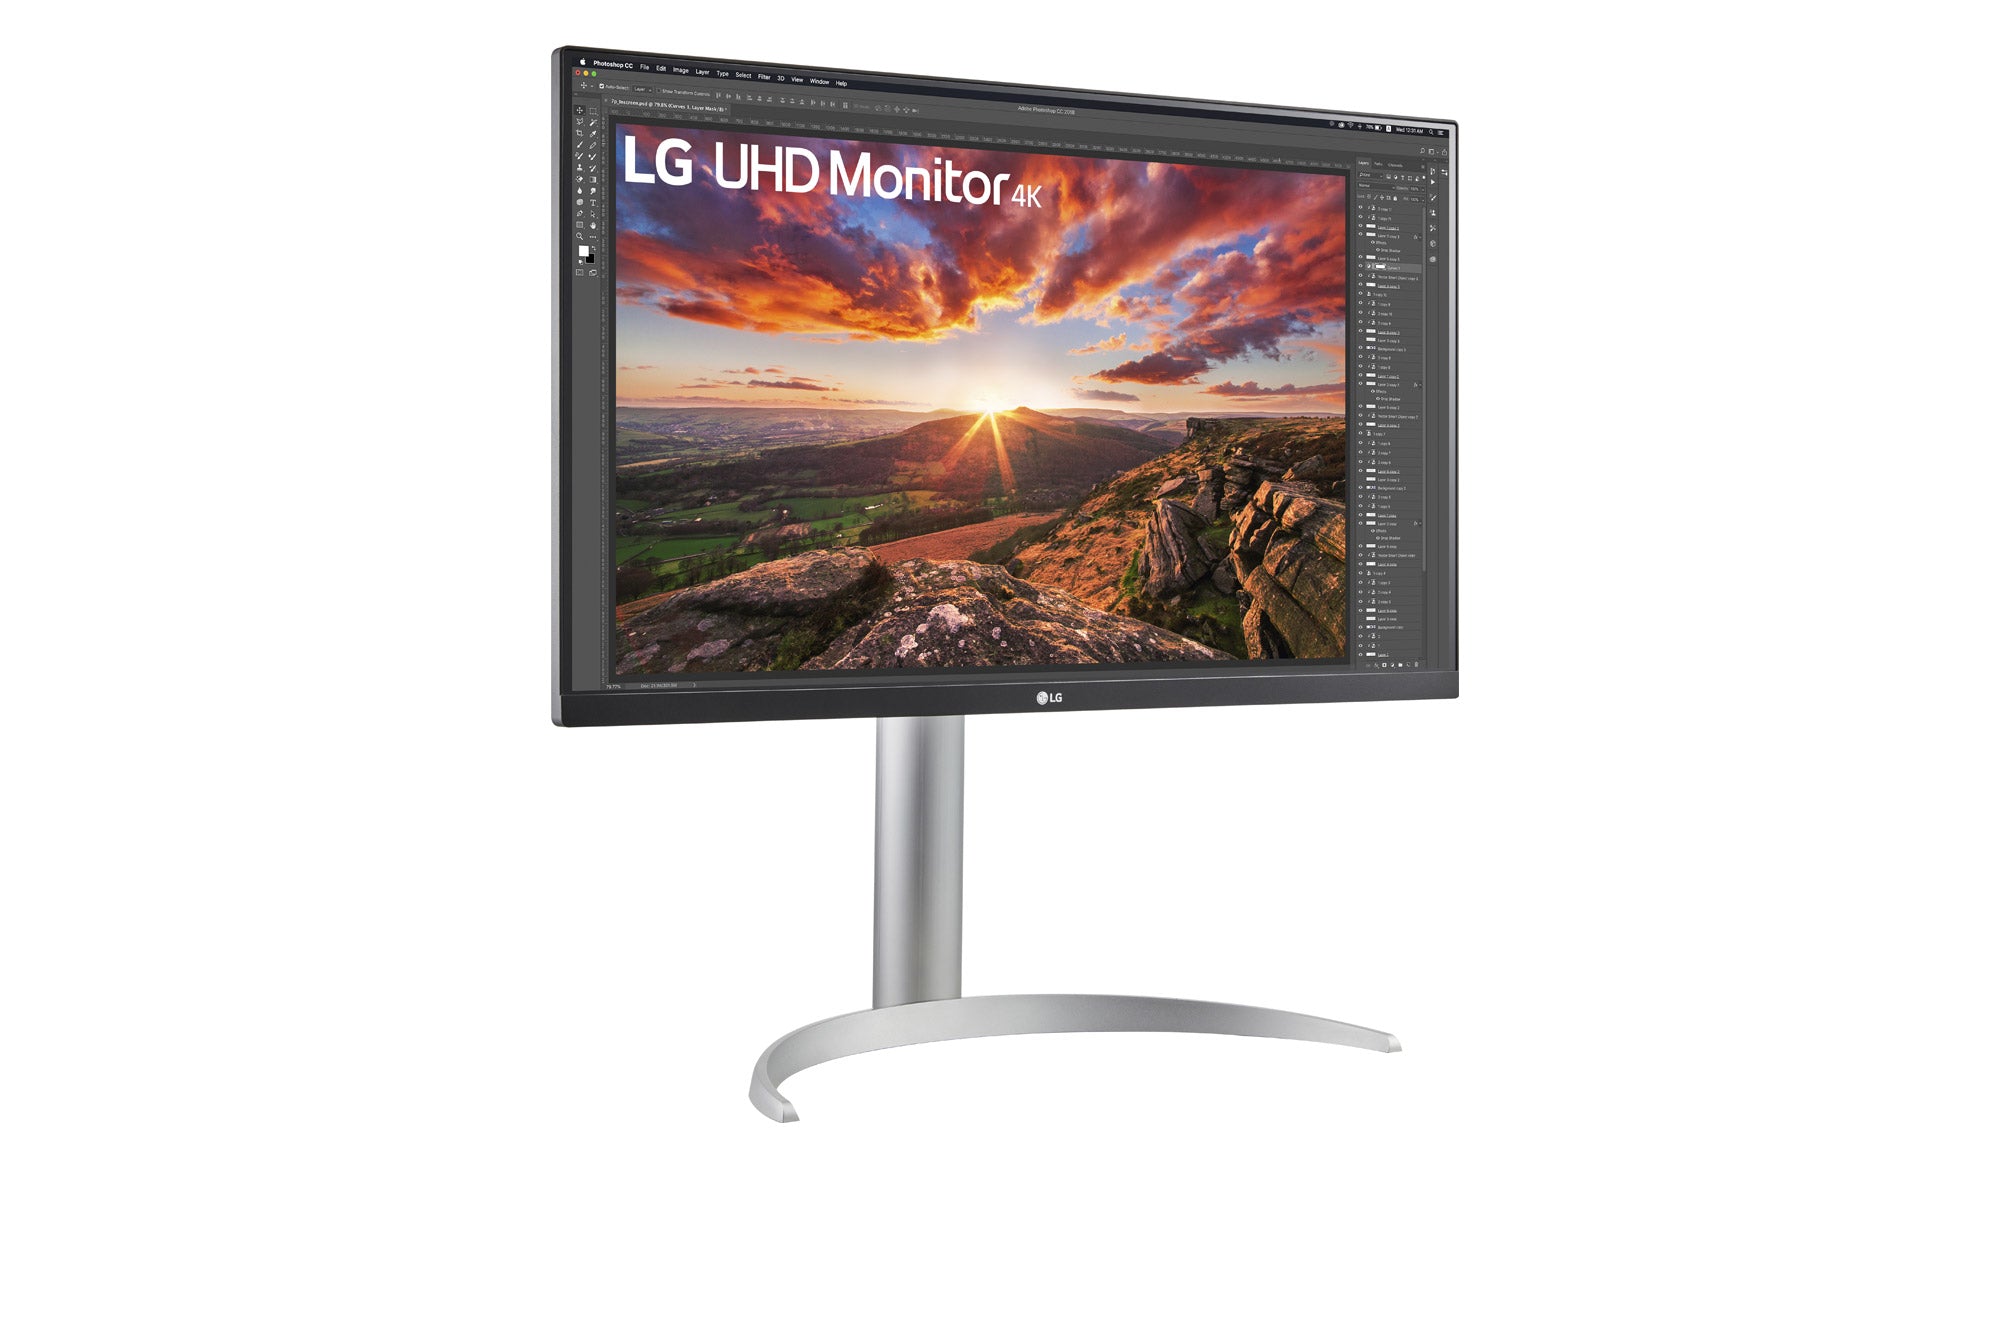 LG 27UP850N UltraHD / 27 inch / 3840 x 2160 Resolution / AMD FreeSync / Dynamic Action Sync / Black Stabilizer